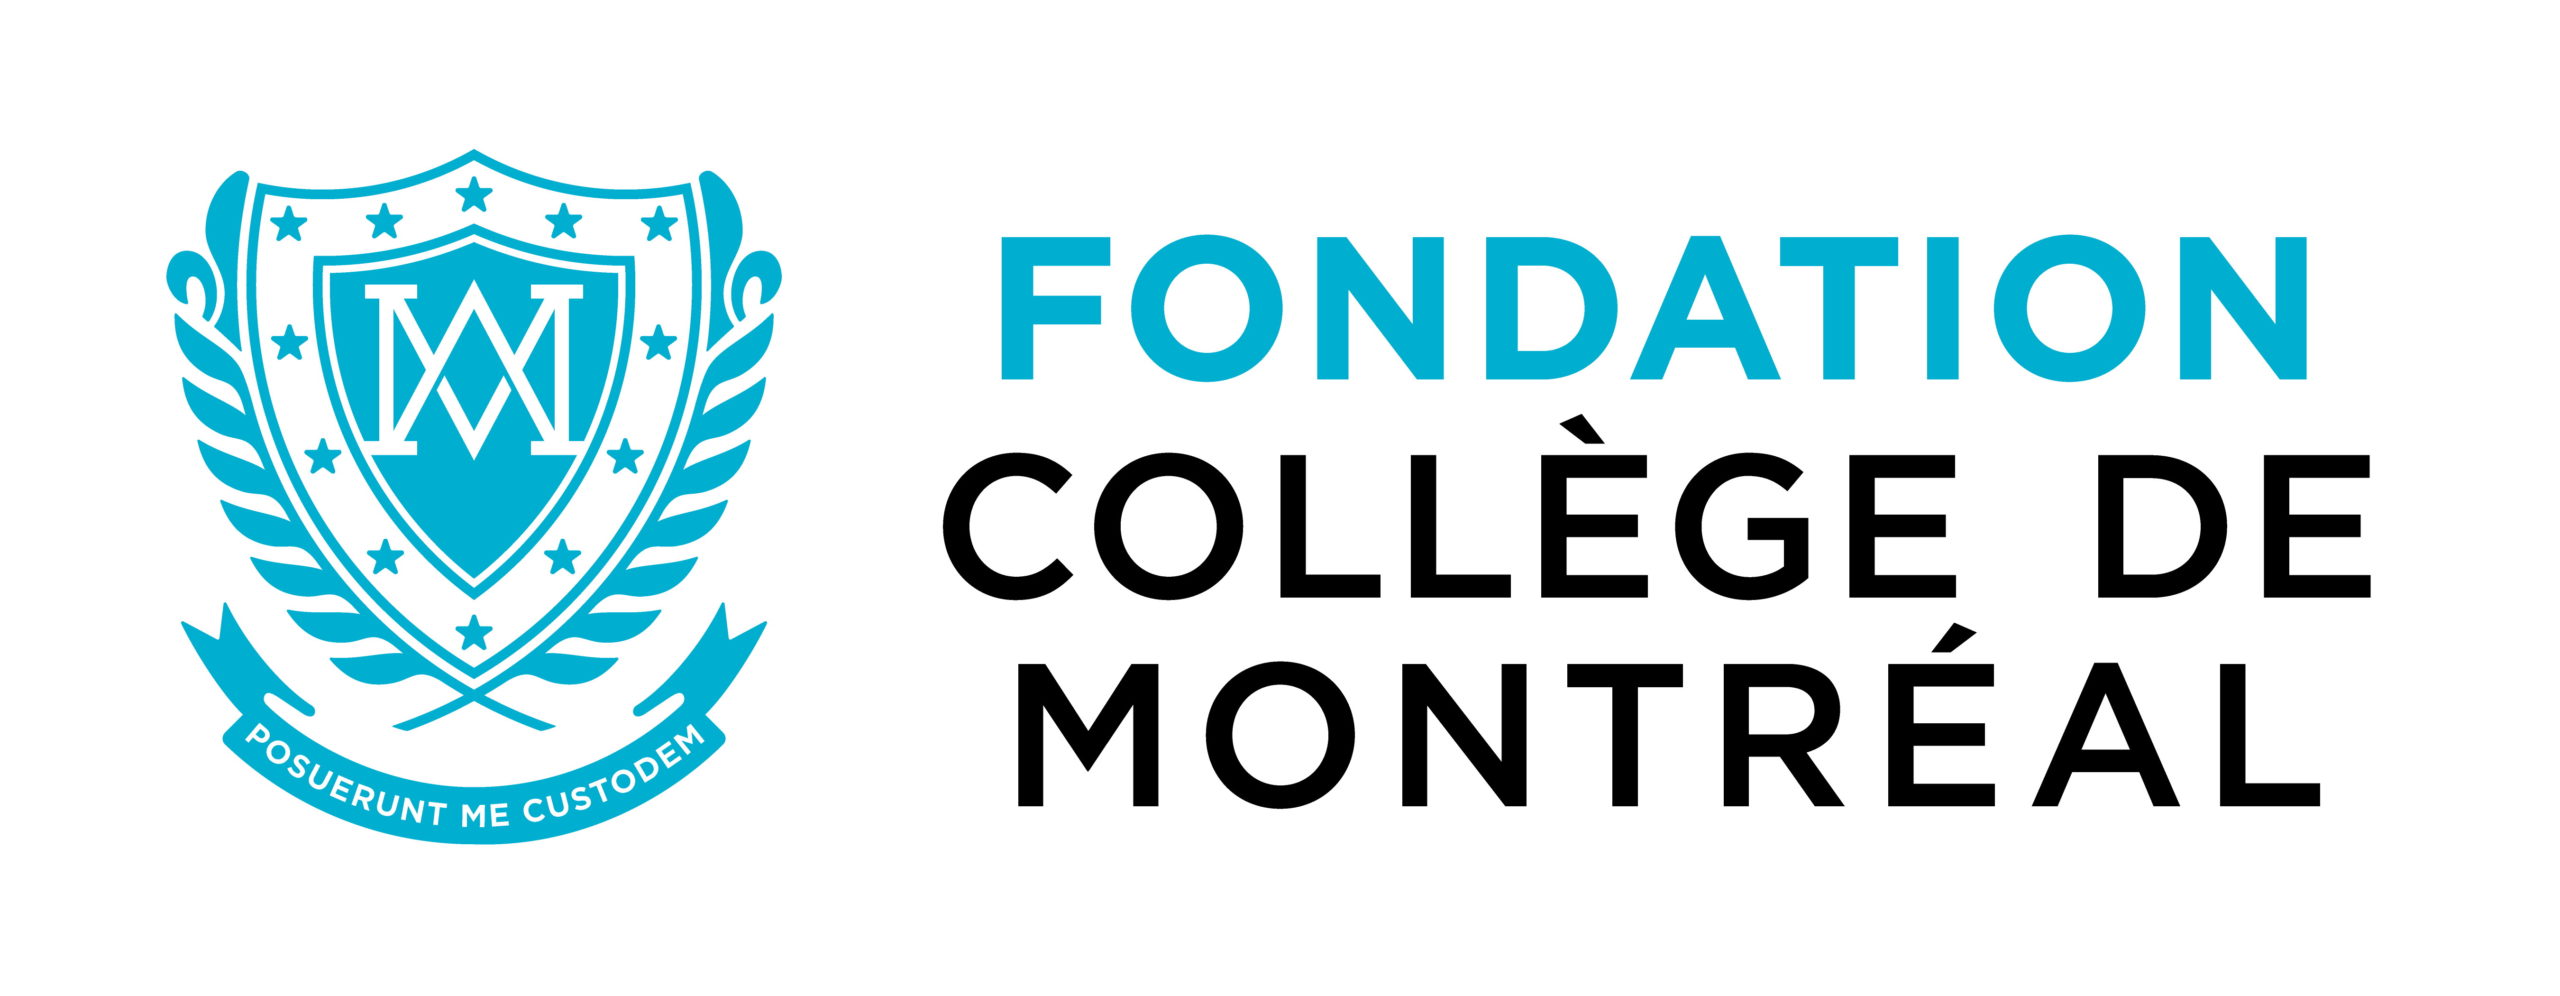 Fondation Collège de Montréal